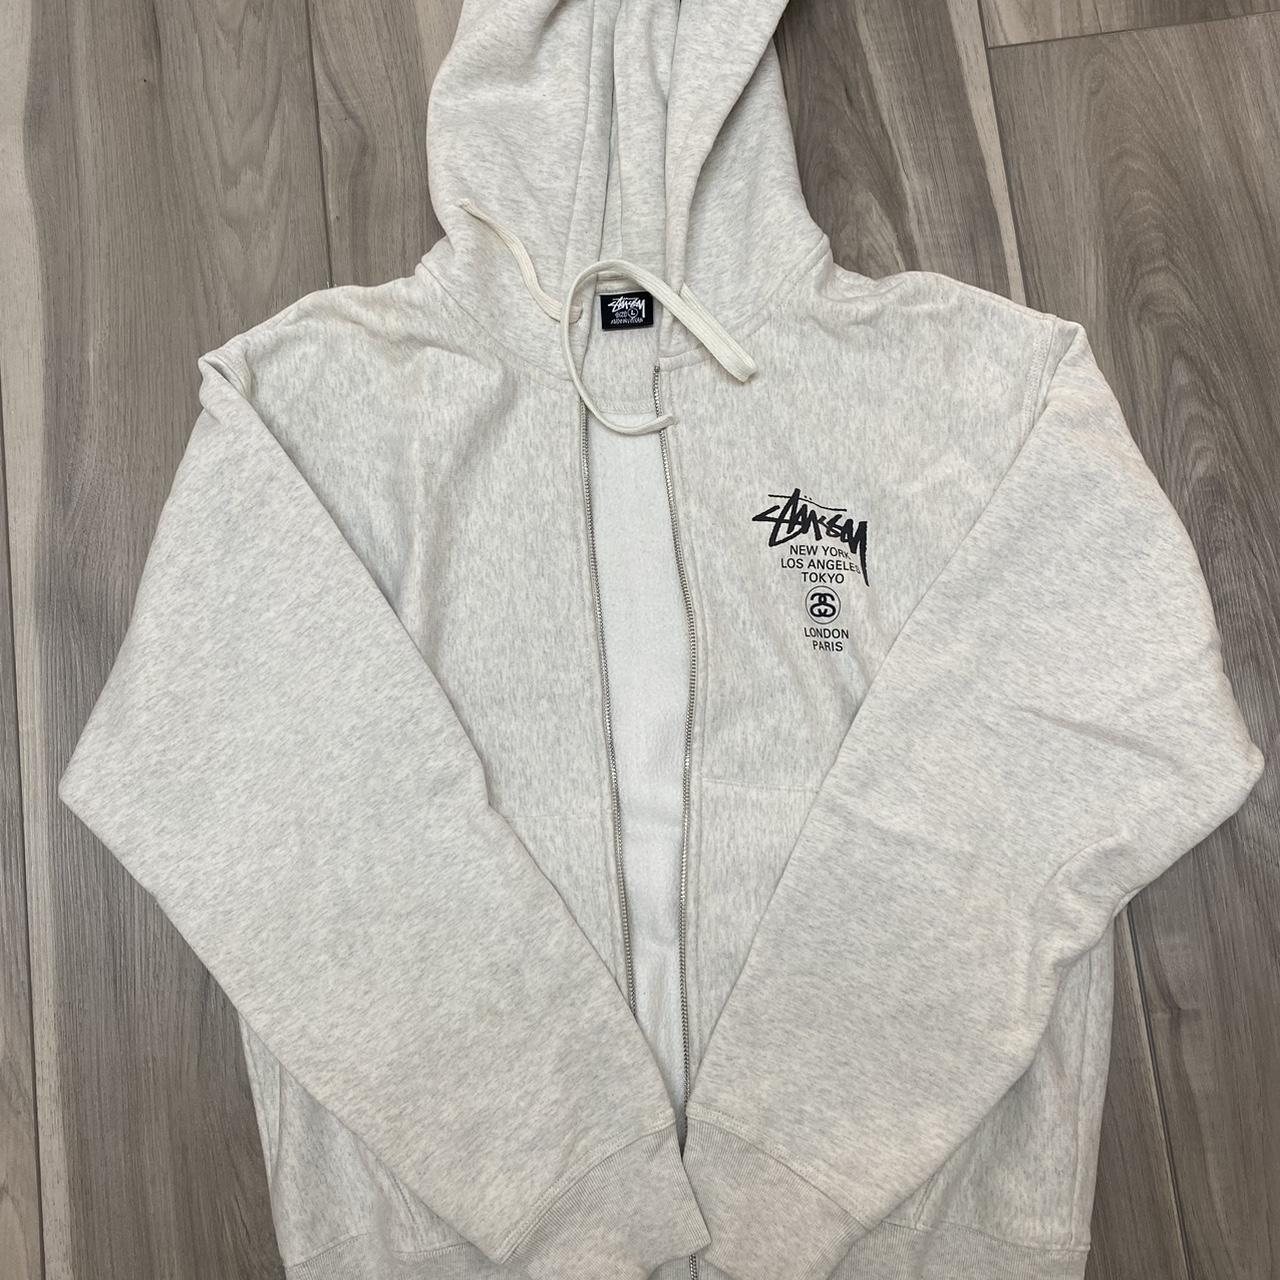 Large Ash Grey World Tour Stussy Zip up hoodie.... - Depop